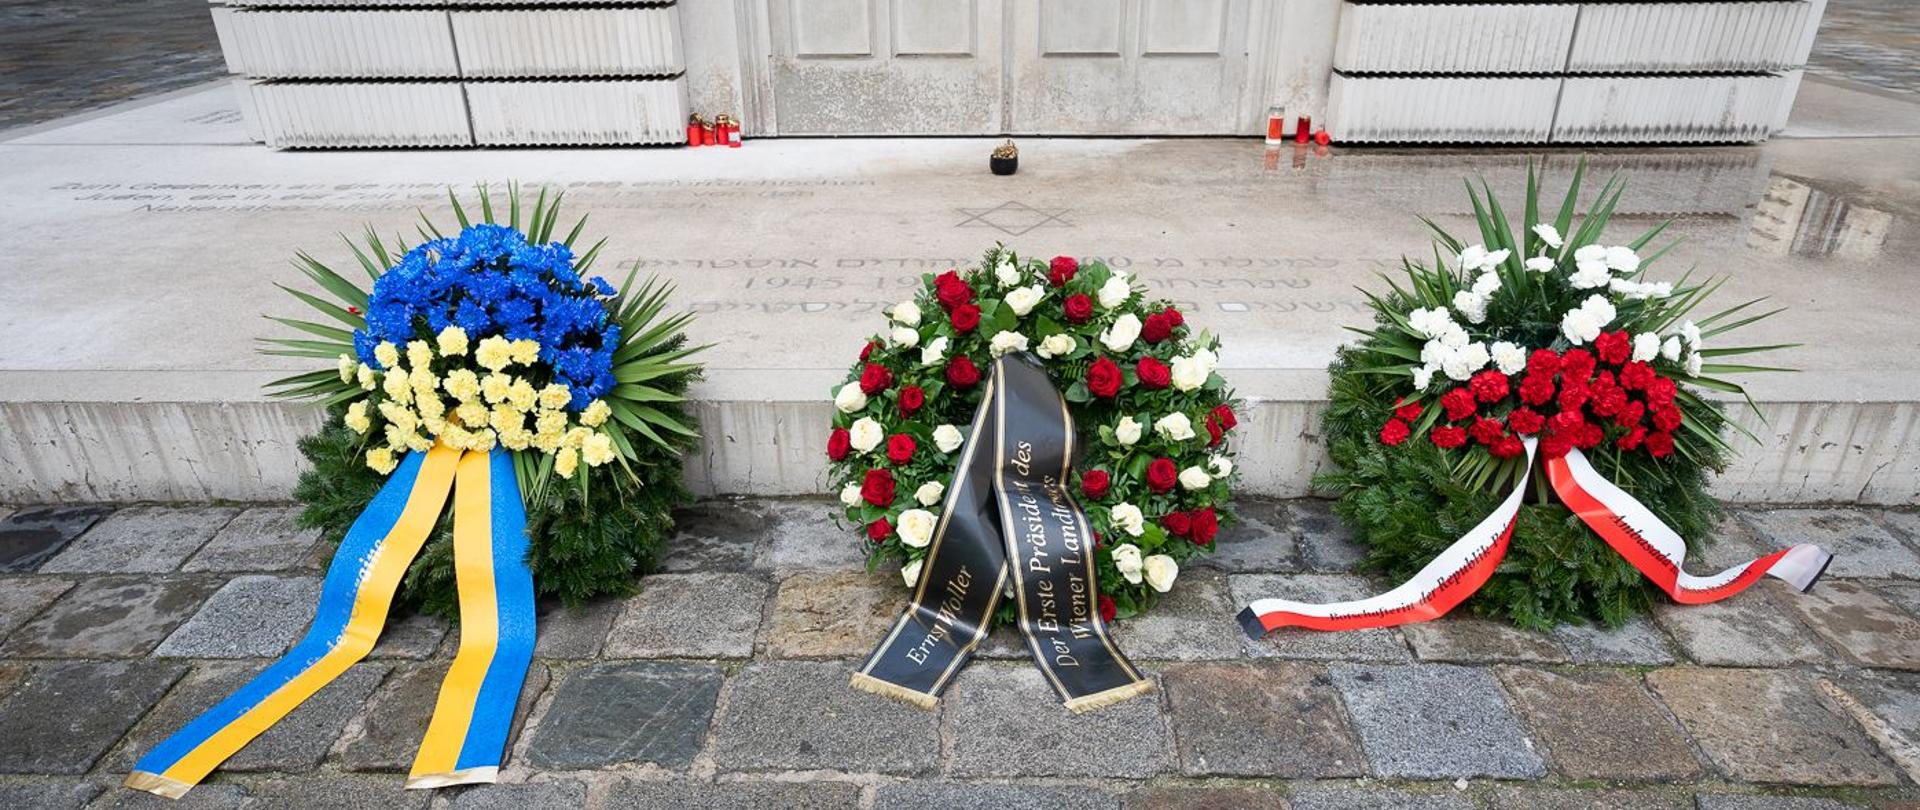 LTP Ernst Woller - internationaler Tag des Gedenkens an die Opfer des Holocaust - Mahnmal für die österreichischen jüdischen Opfer 